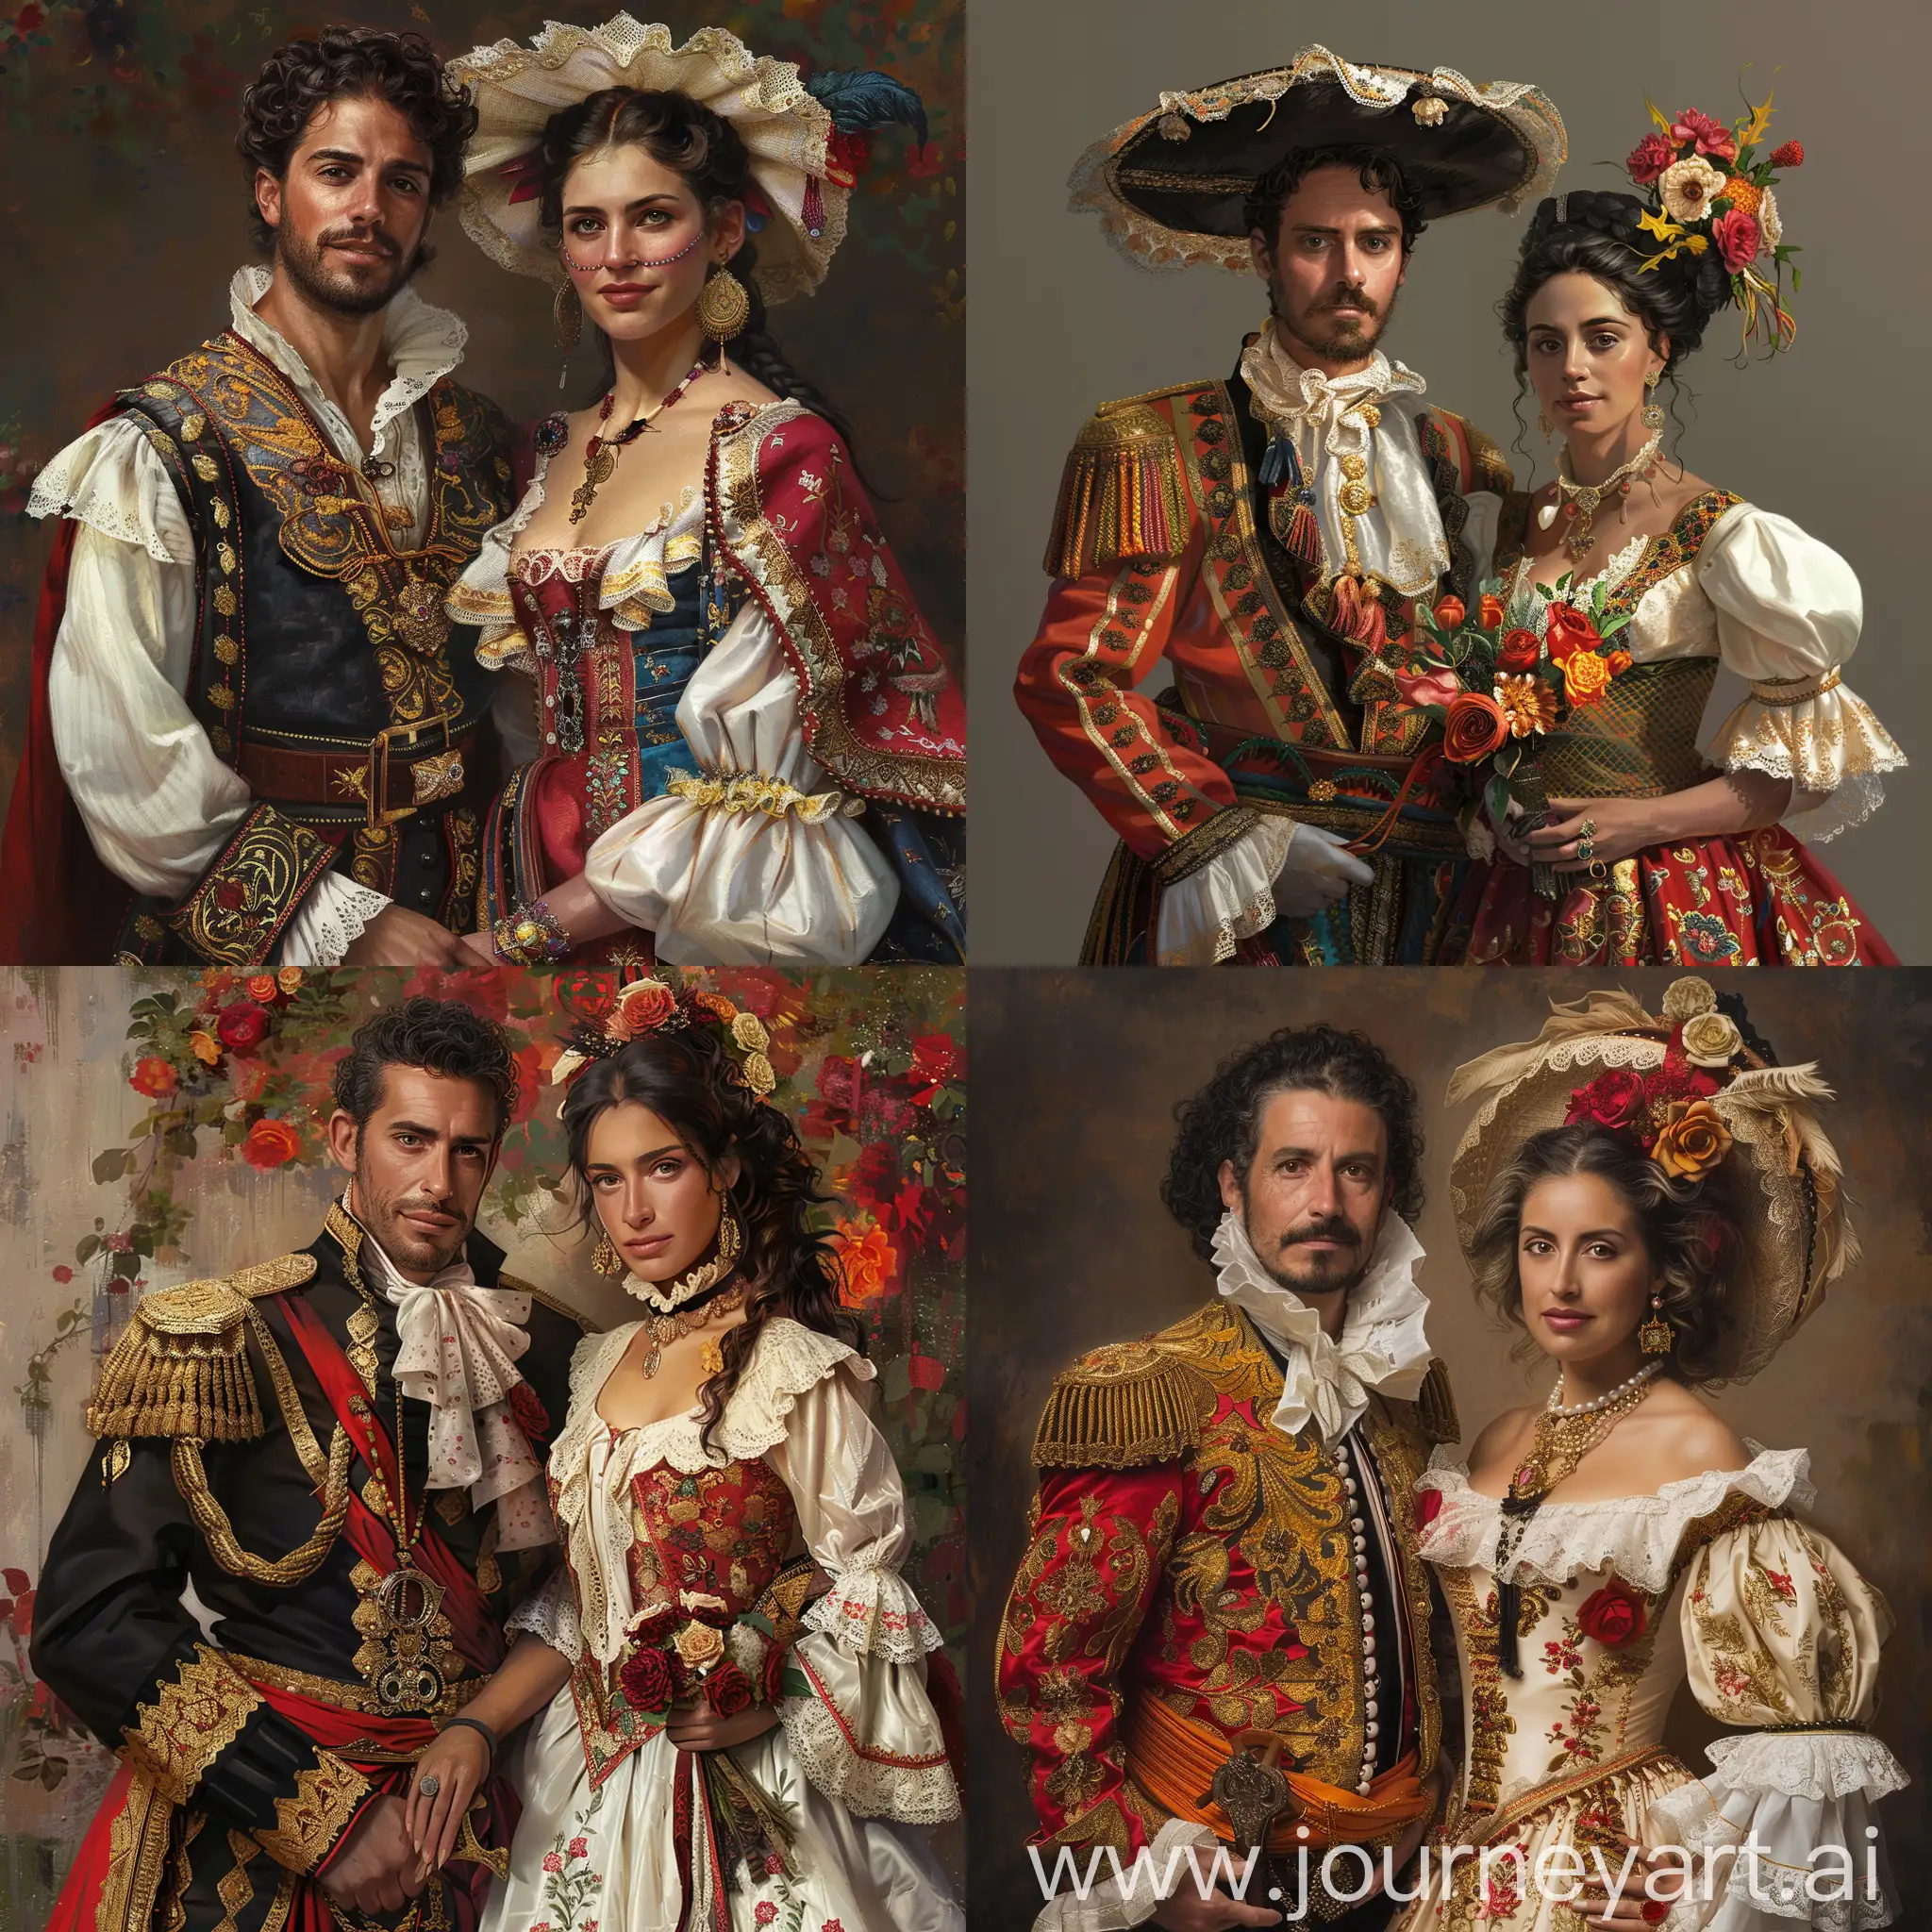 Am nevoie de o imagine realista in care sa fie un barbat si o femei imbrcati in costume traditionale spaniole